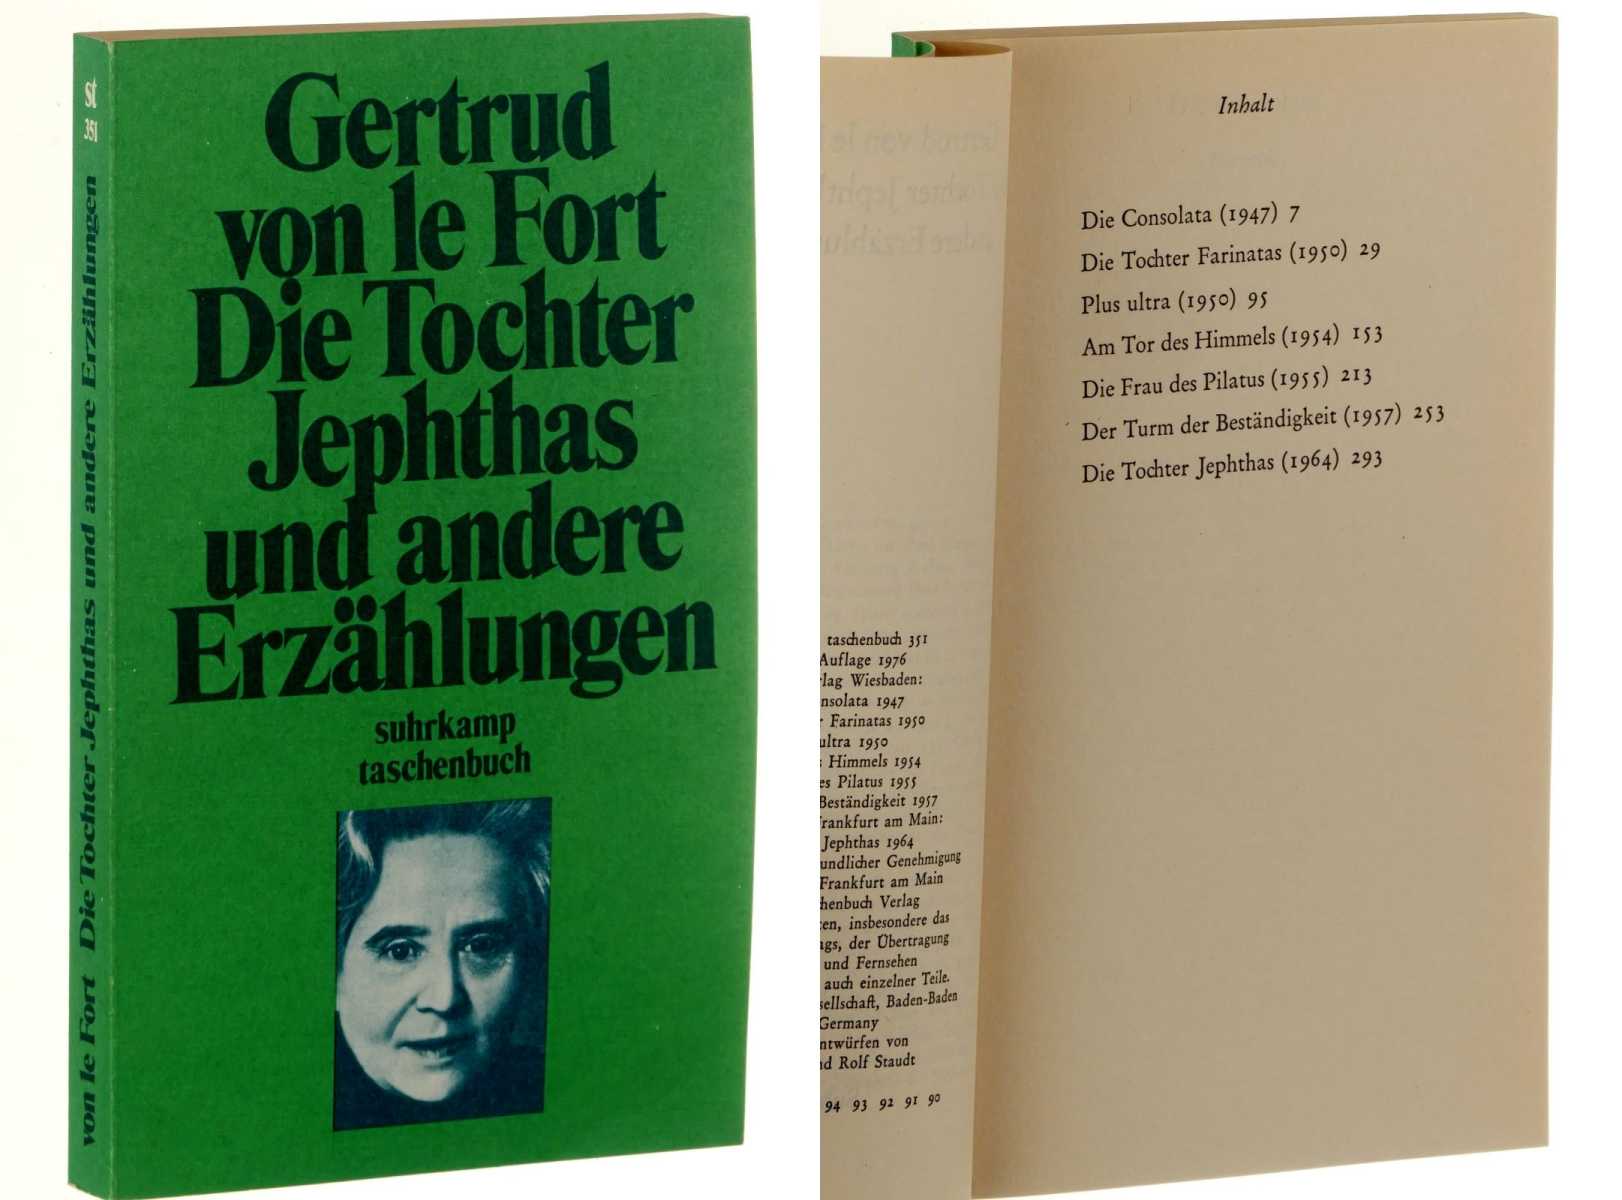 Le Fort, Gertrud von:  Die Tochter Jephthas und andere Erzählungen. 